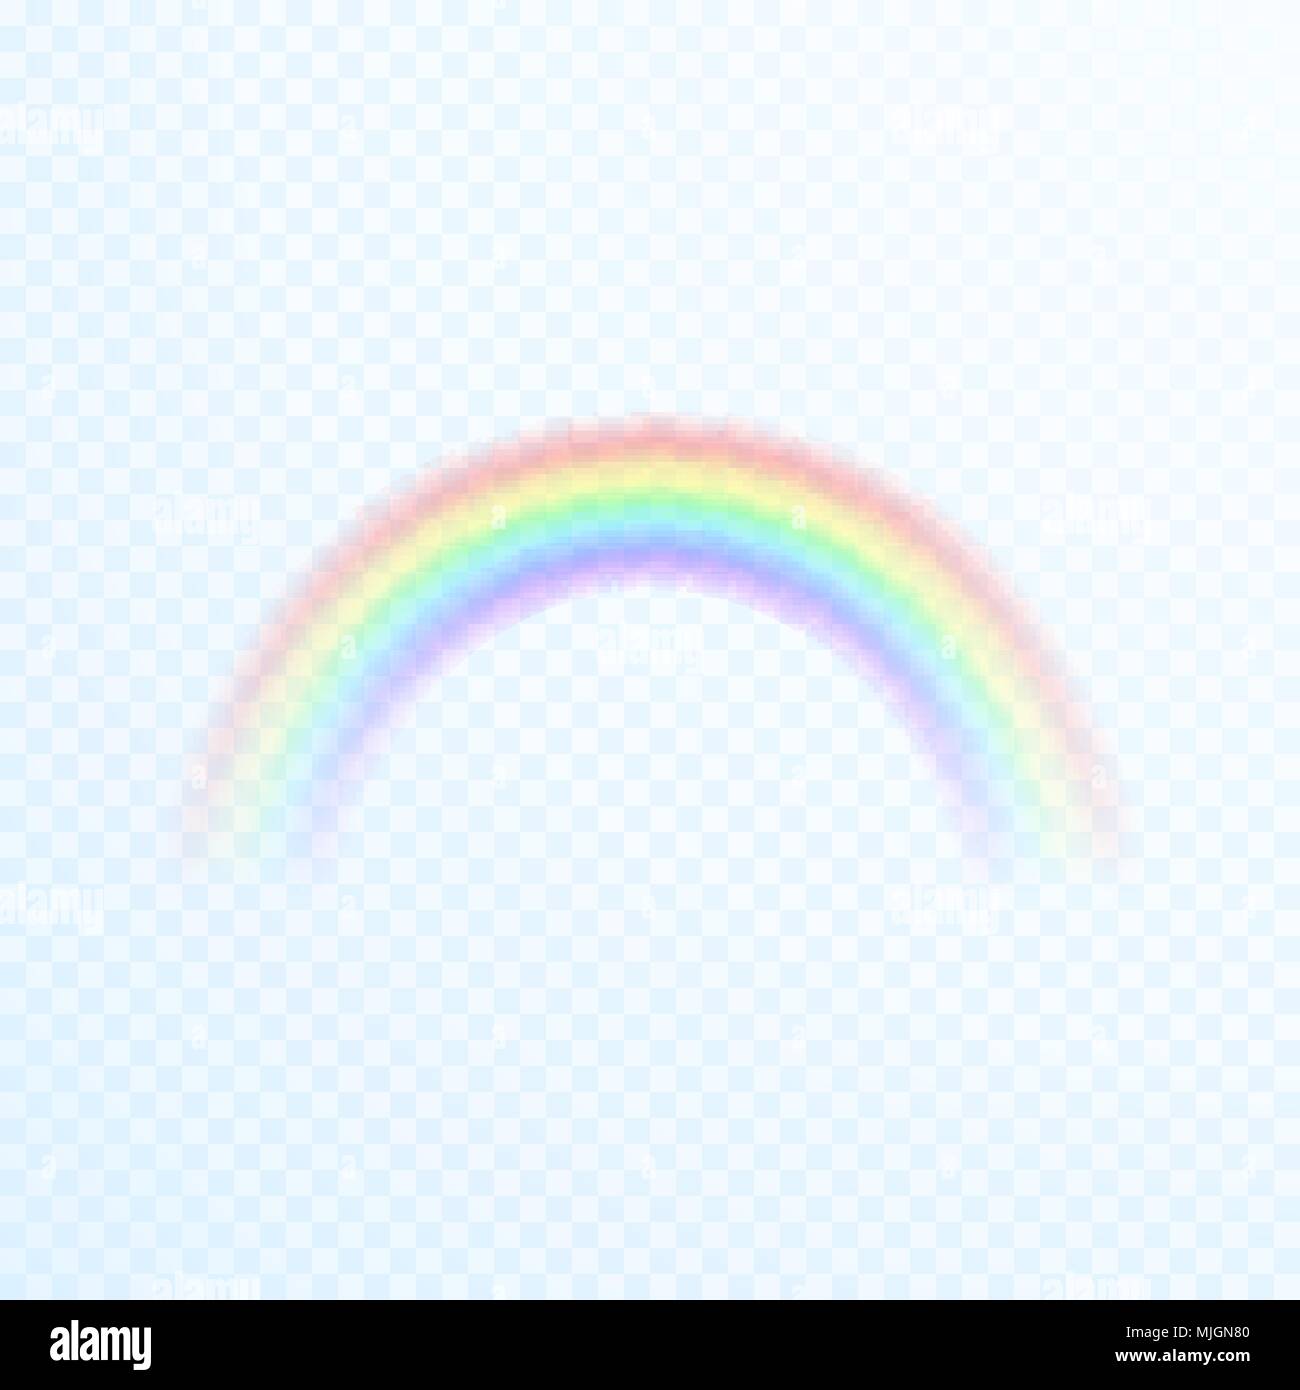 Trasparente colorato icona arcobaleno. Abstract arcobaleno immagine. Illustrazione di vettore isolato su sfondo trasparente Illustrazione Vettoriale